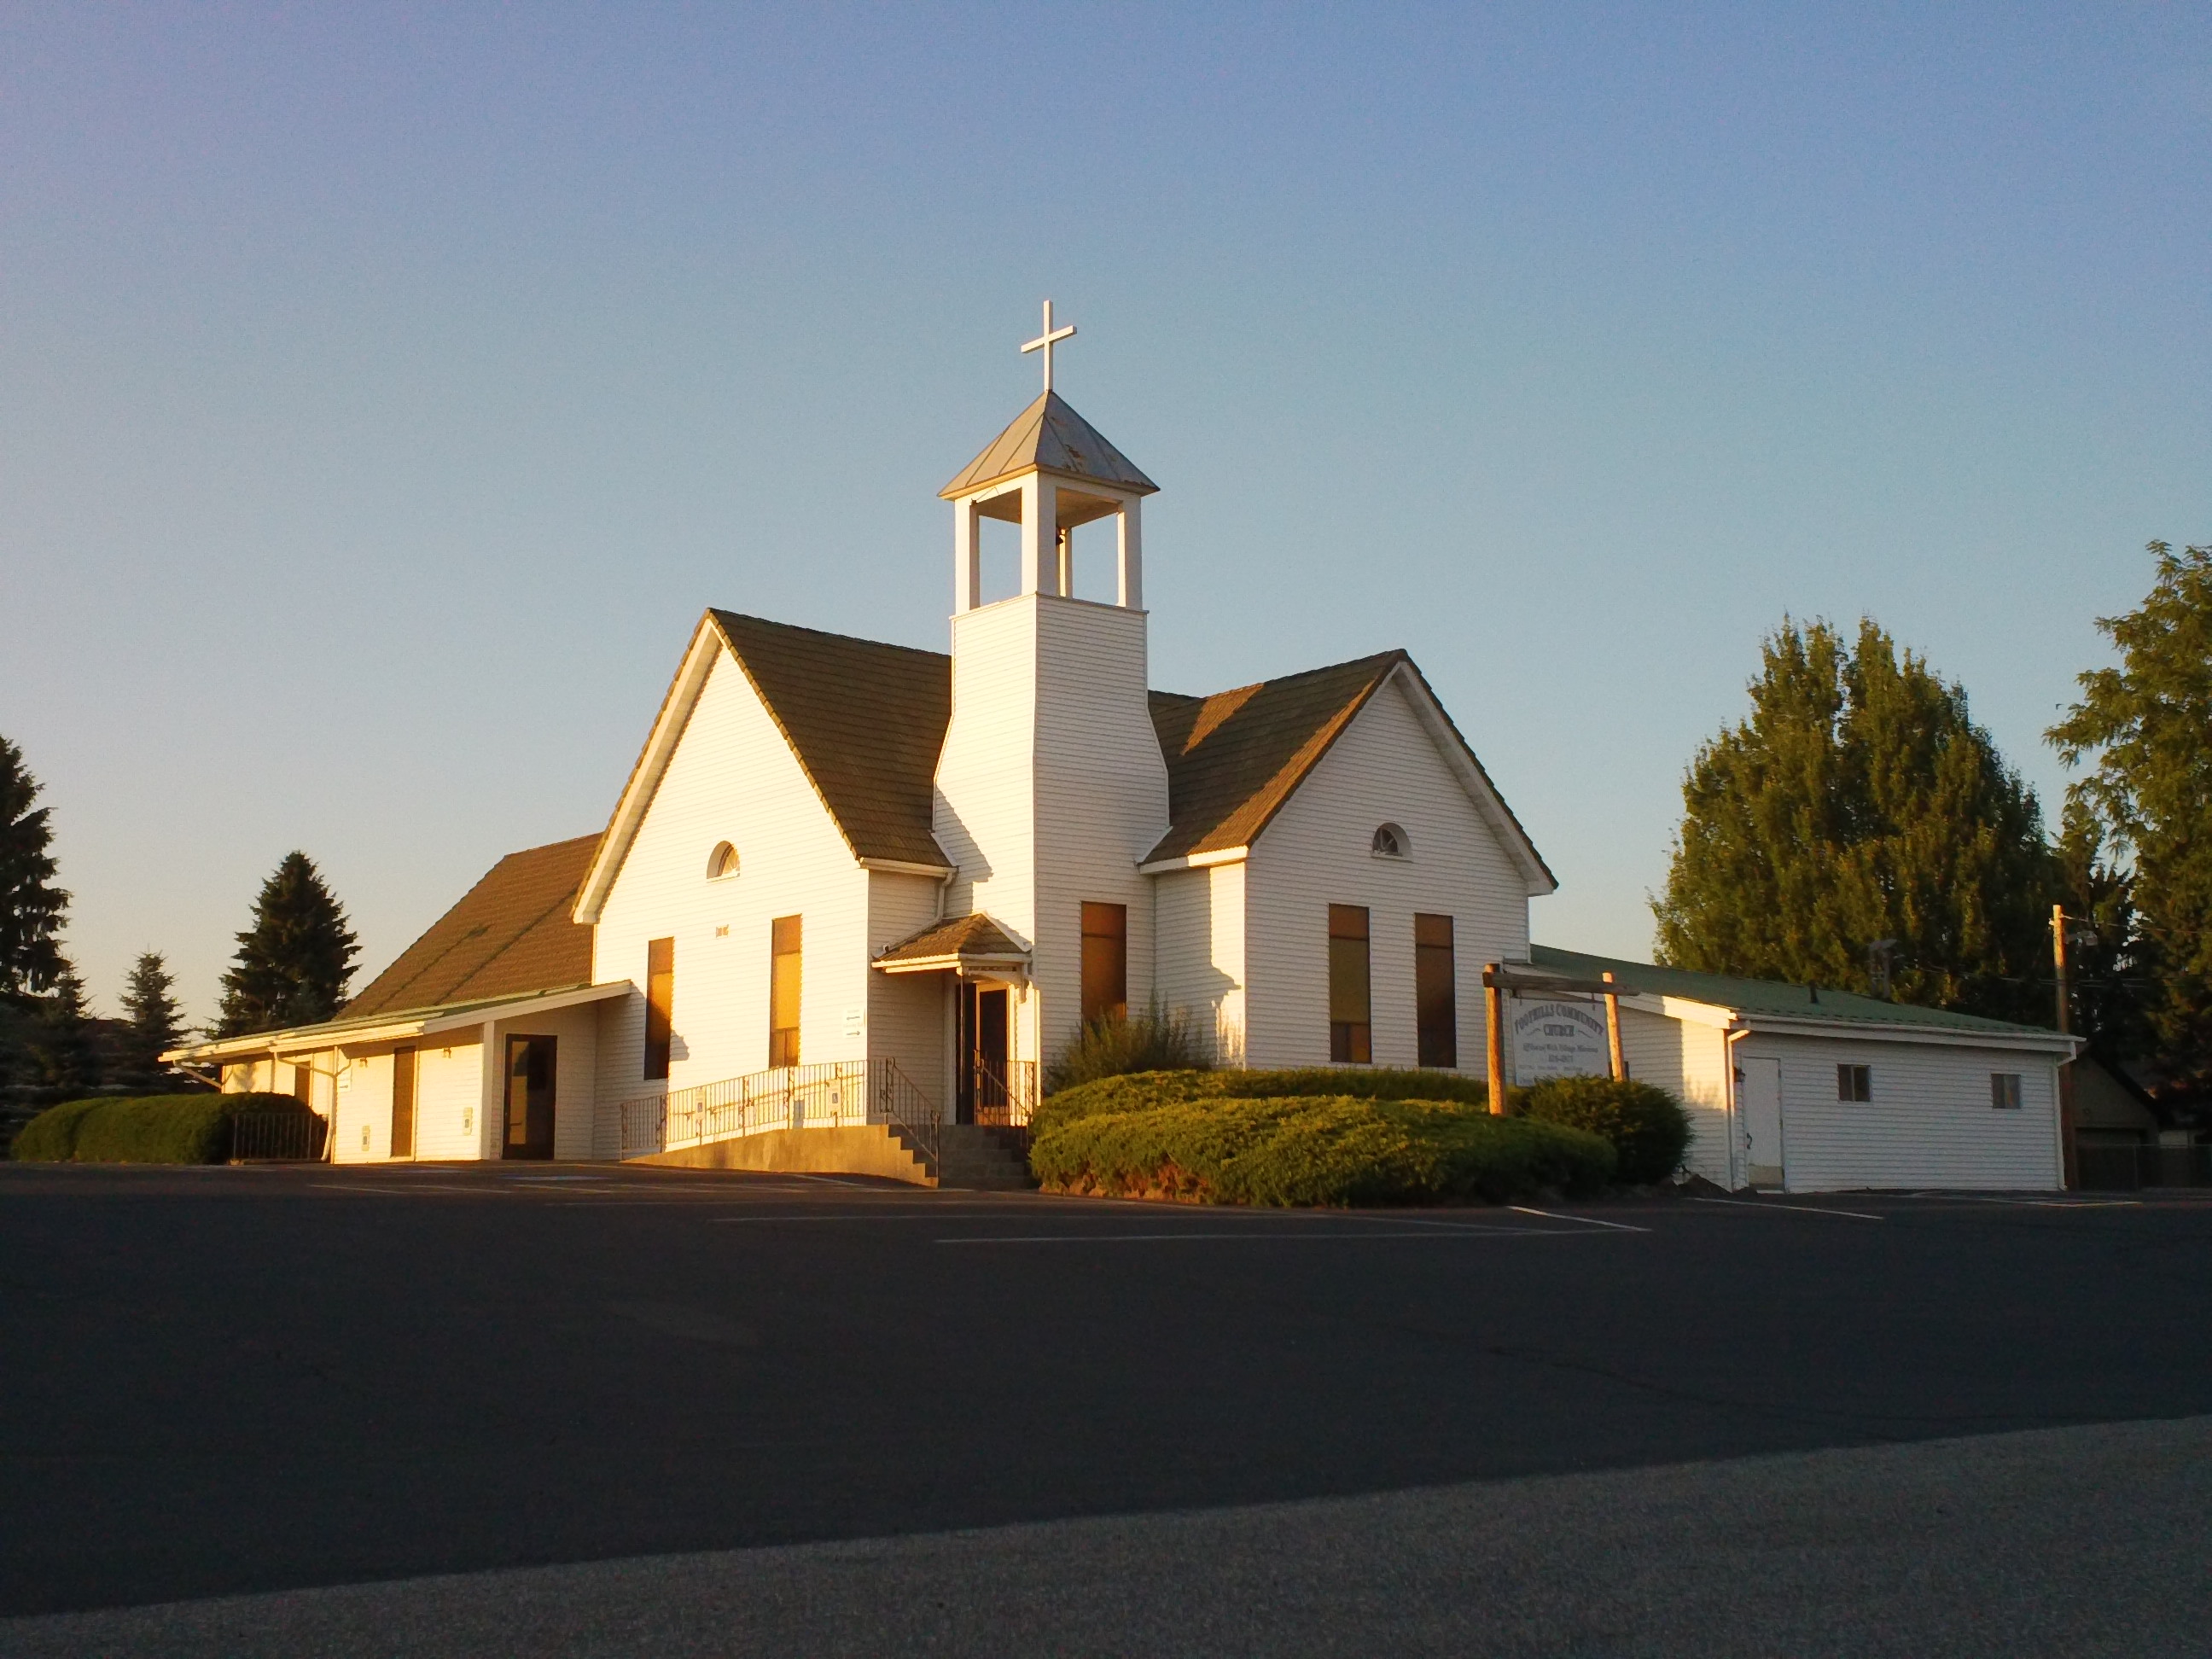 Foothills Community Church of Spokane, WA - Welcome to Spokane ...